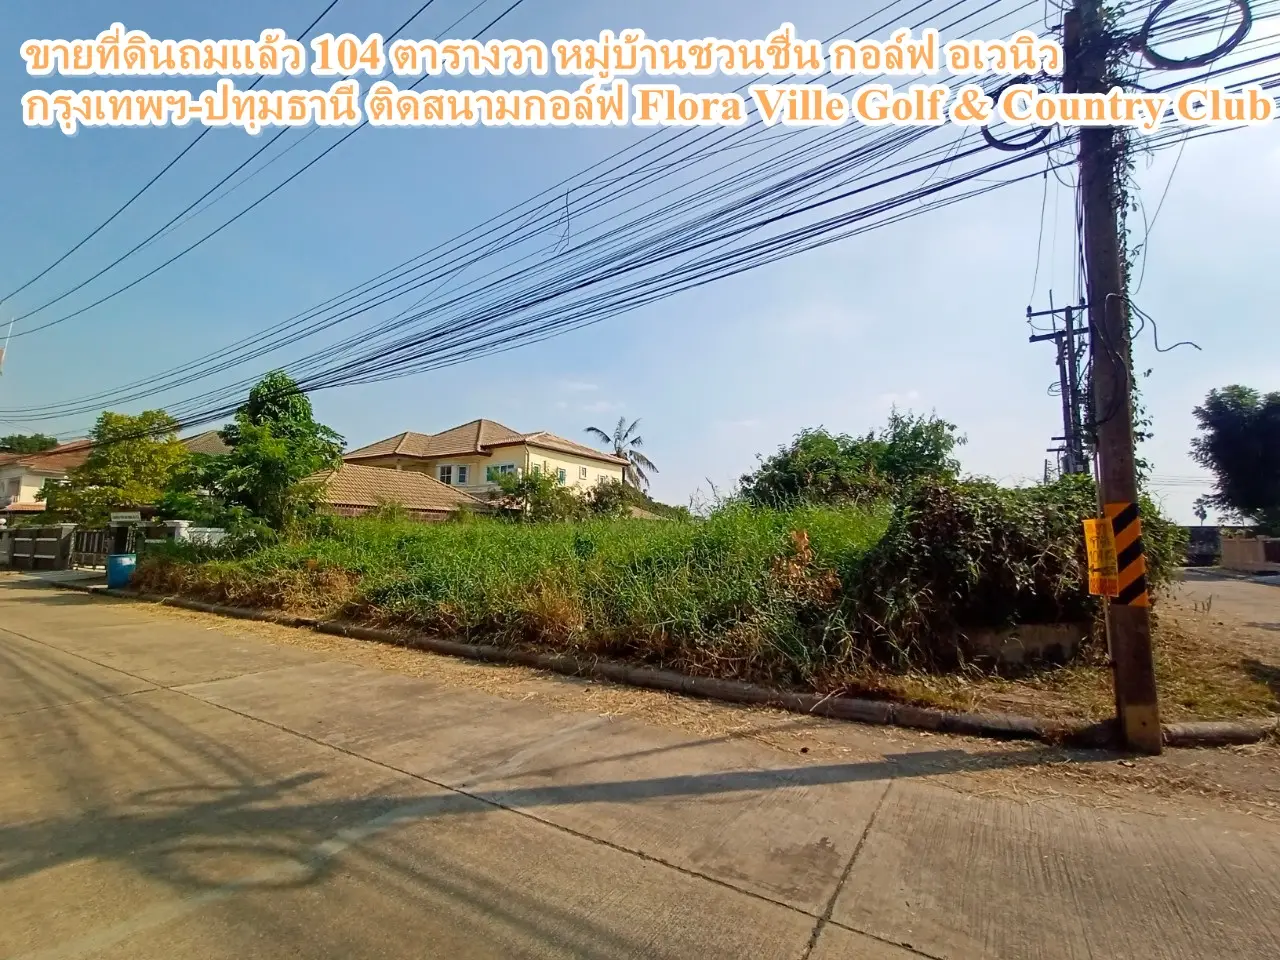 土地已经填满。Chuan Chuen Golf Avenue Village, Bangkok - Pathum Thani, 毗邻 Flora Ville 高尔夫球场